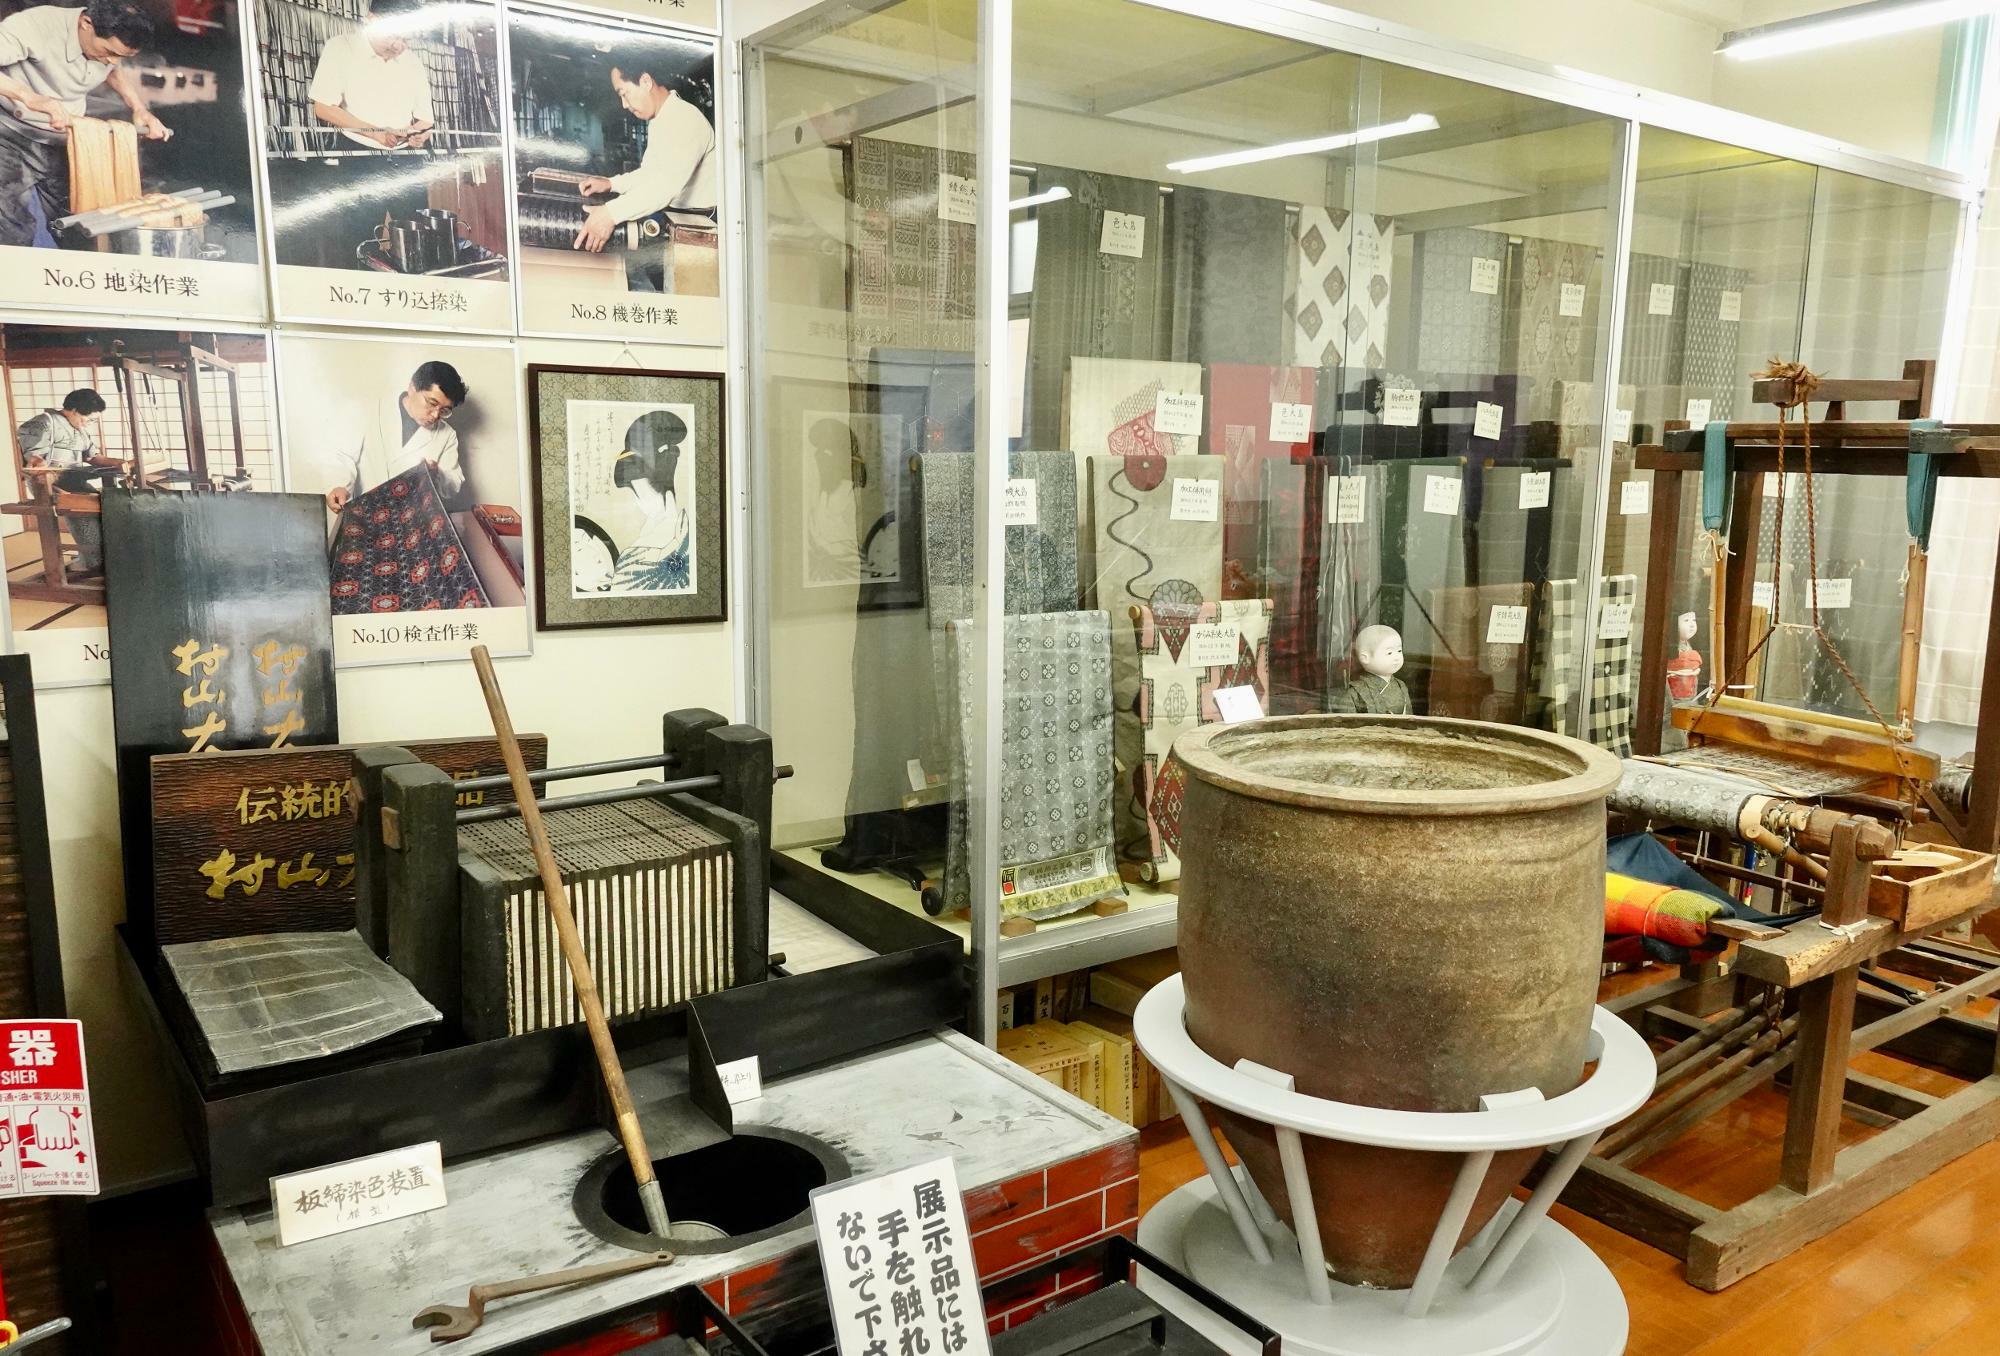 村山大島紬の歴史を知ることができる貴重な史料の展示も